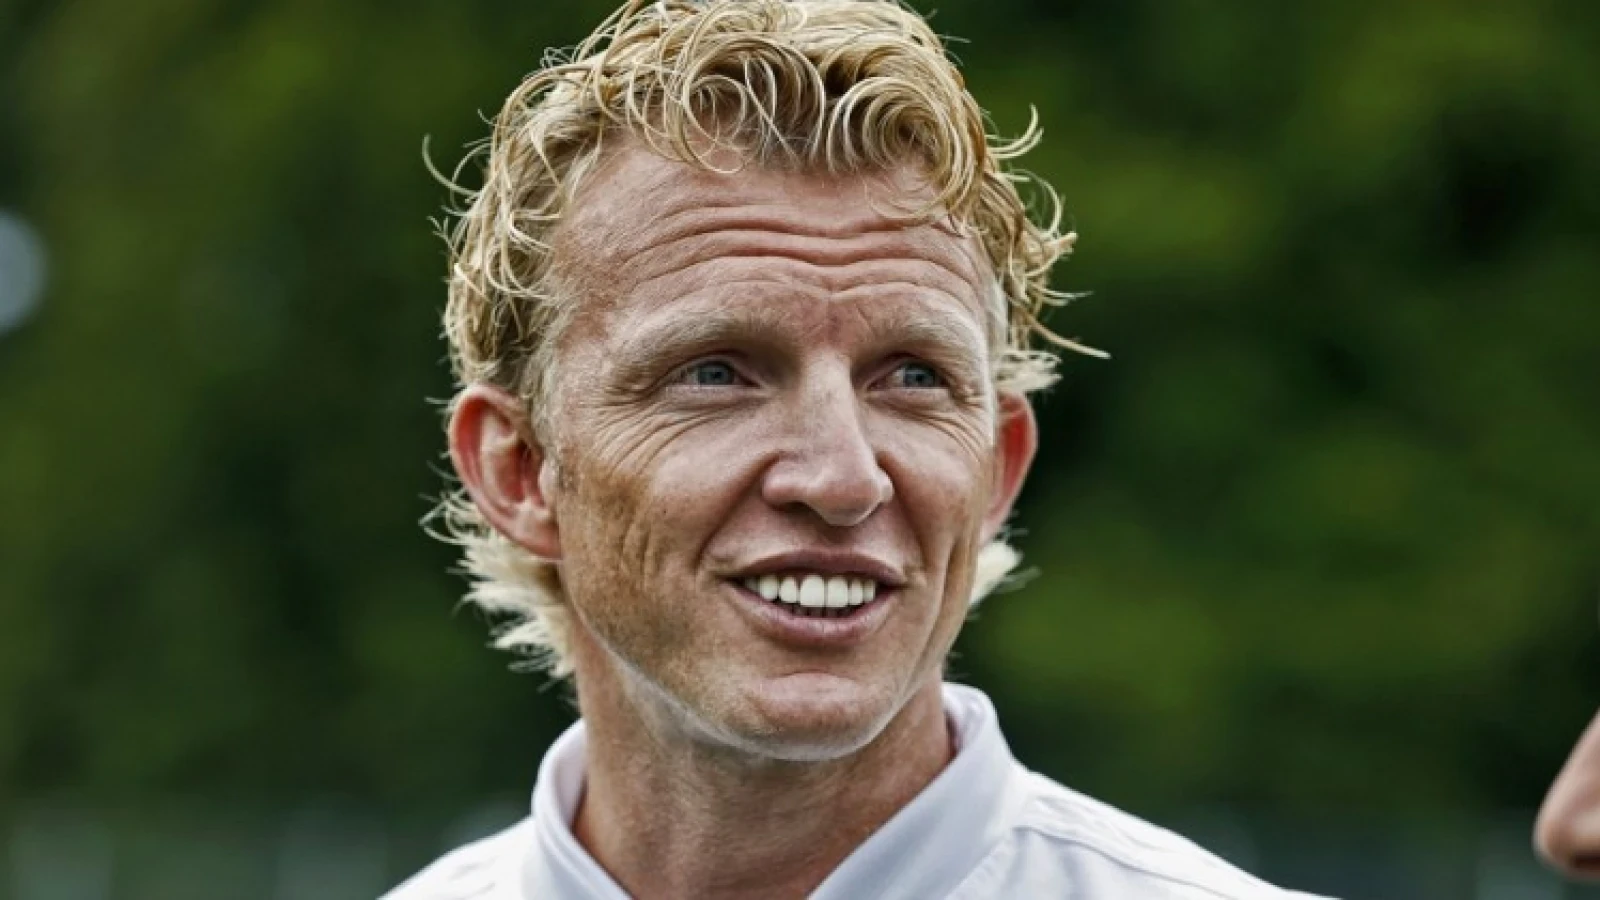 Kuyt geniet van trainen Feyenoord O19: 'Voetbal is mijn lust en mijn leven'